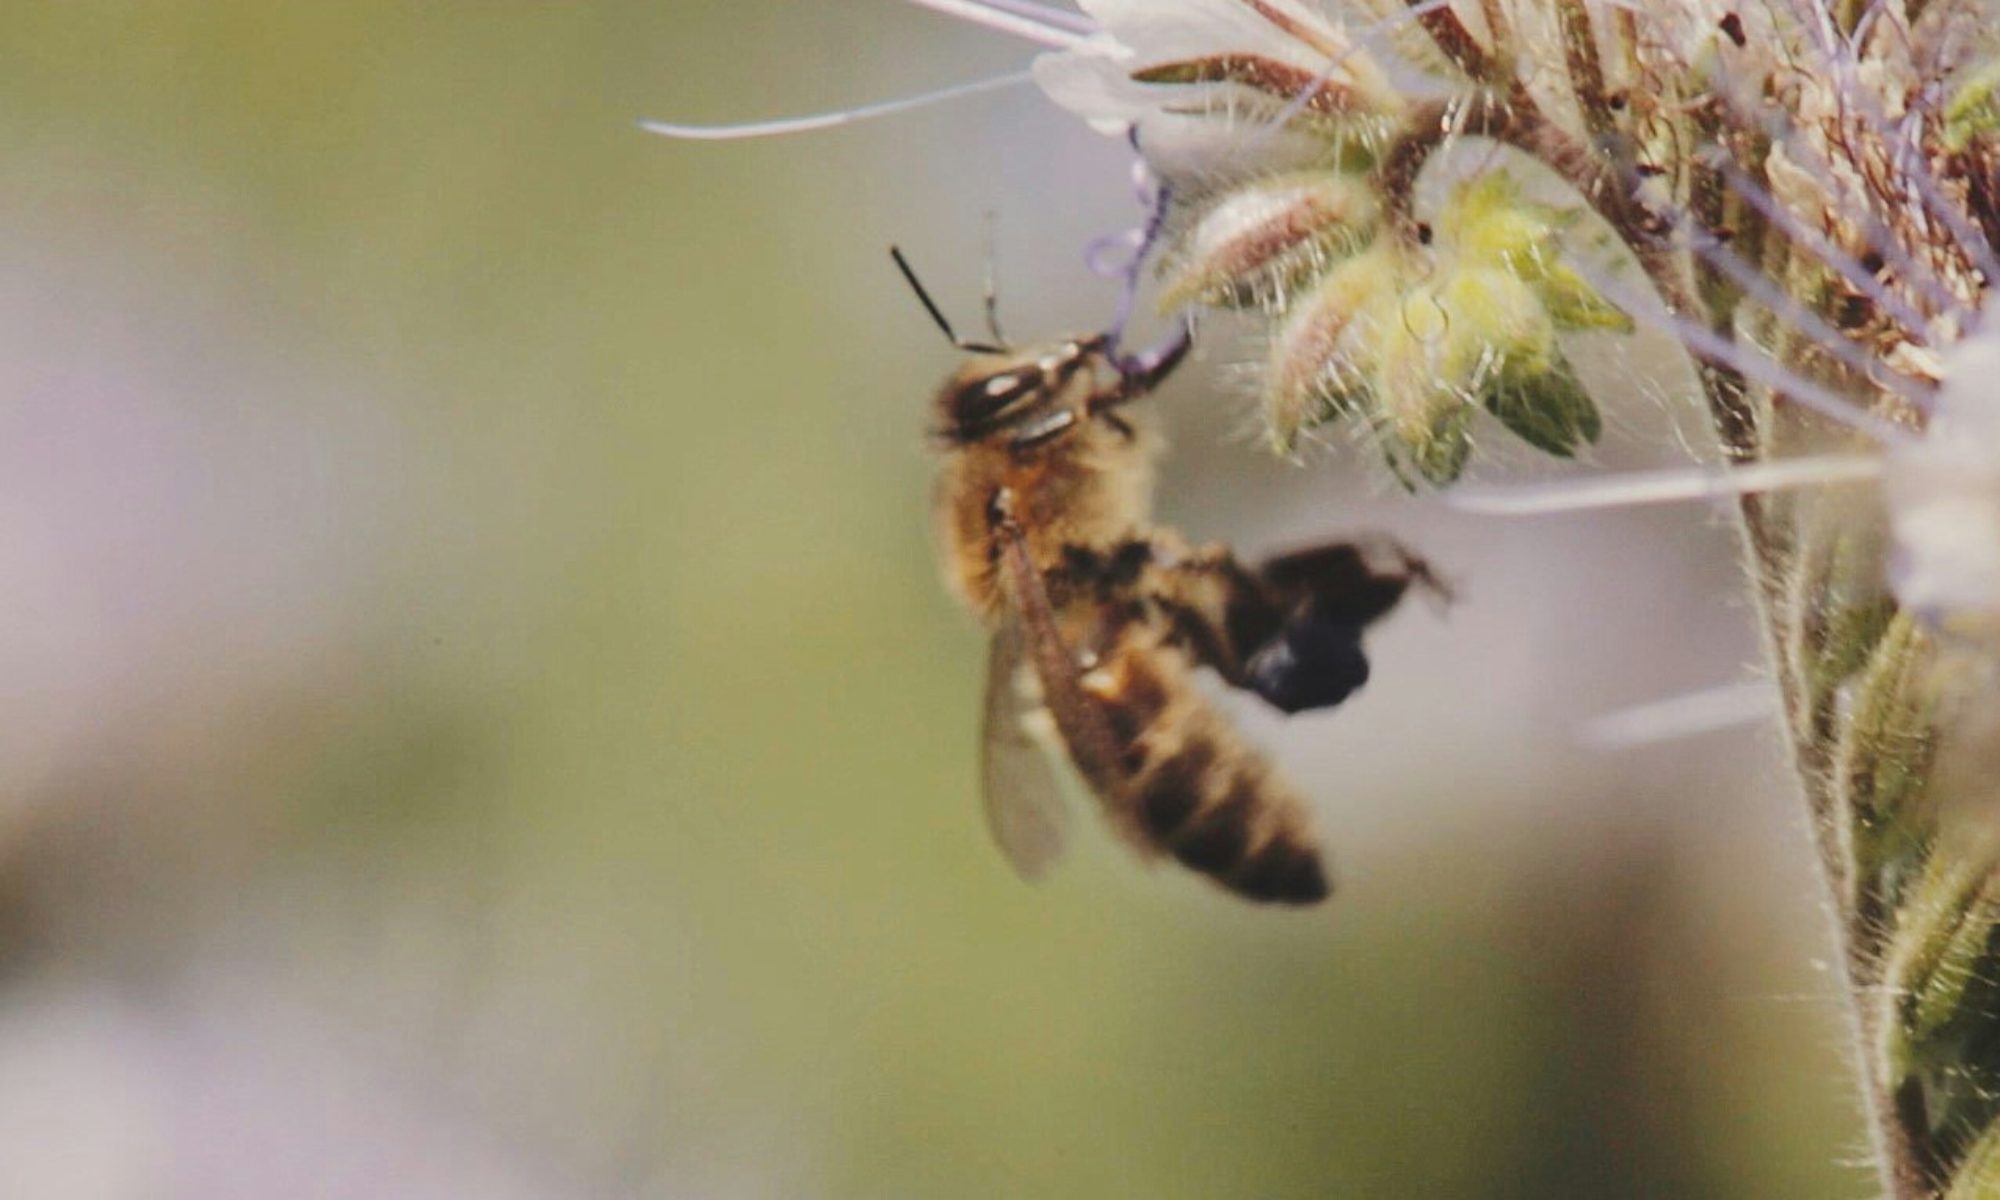 Data Science in beekeeping